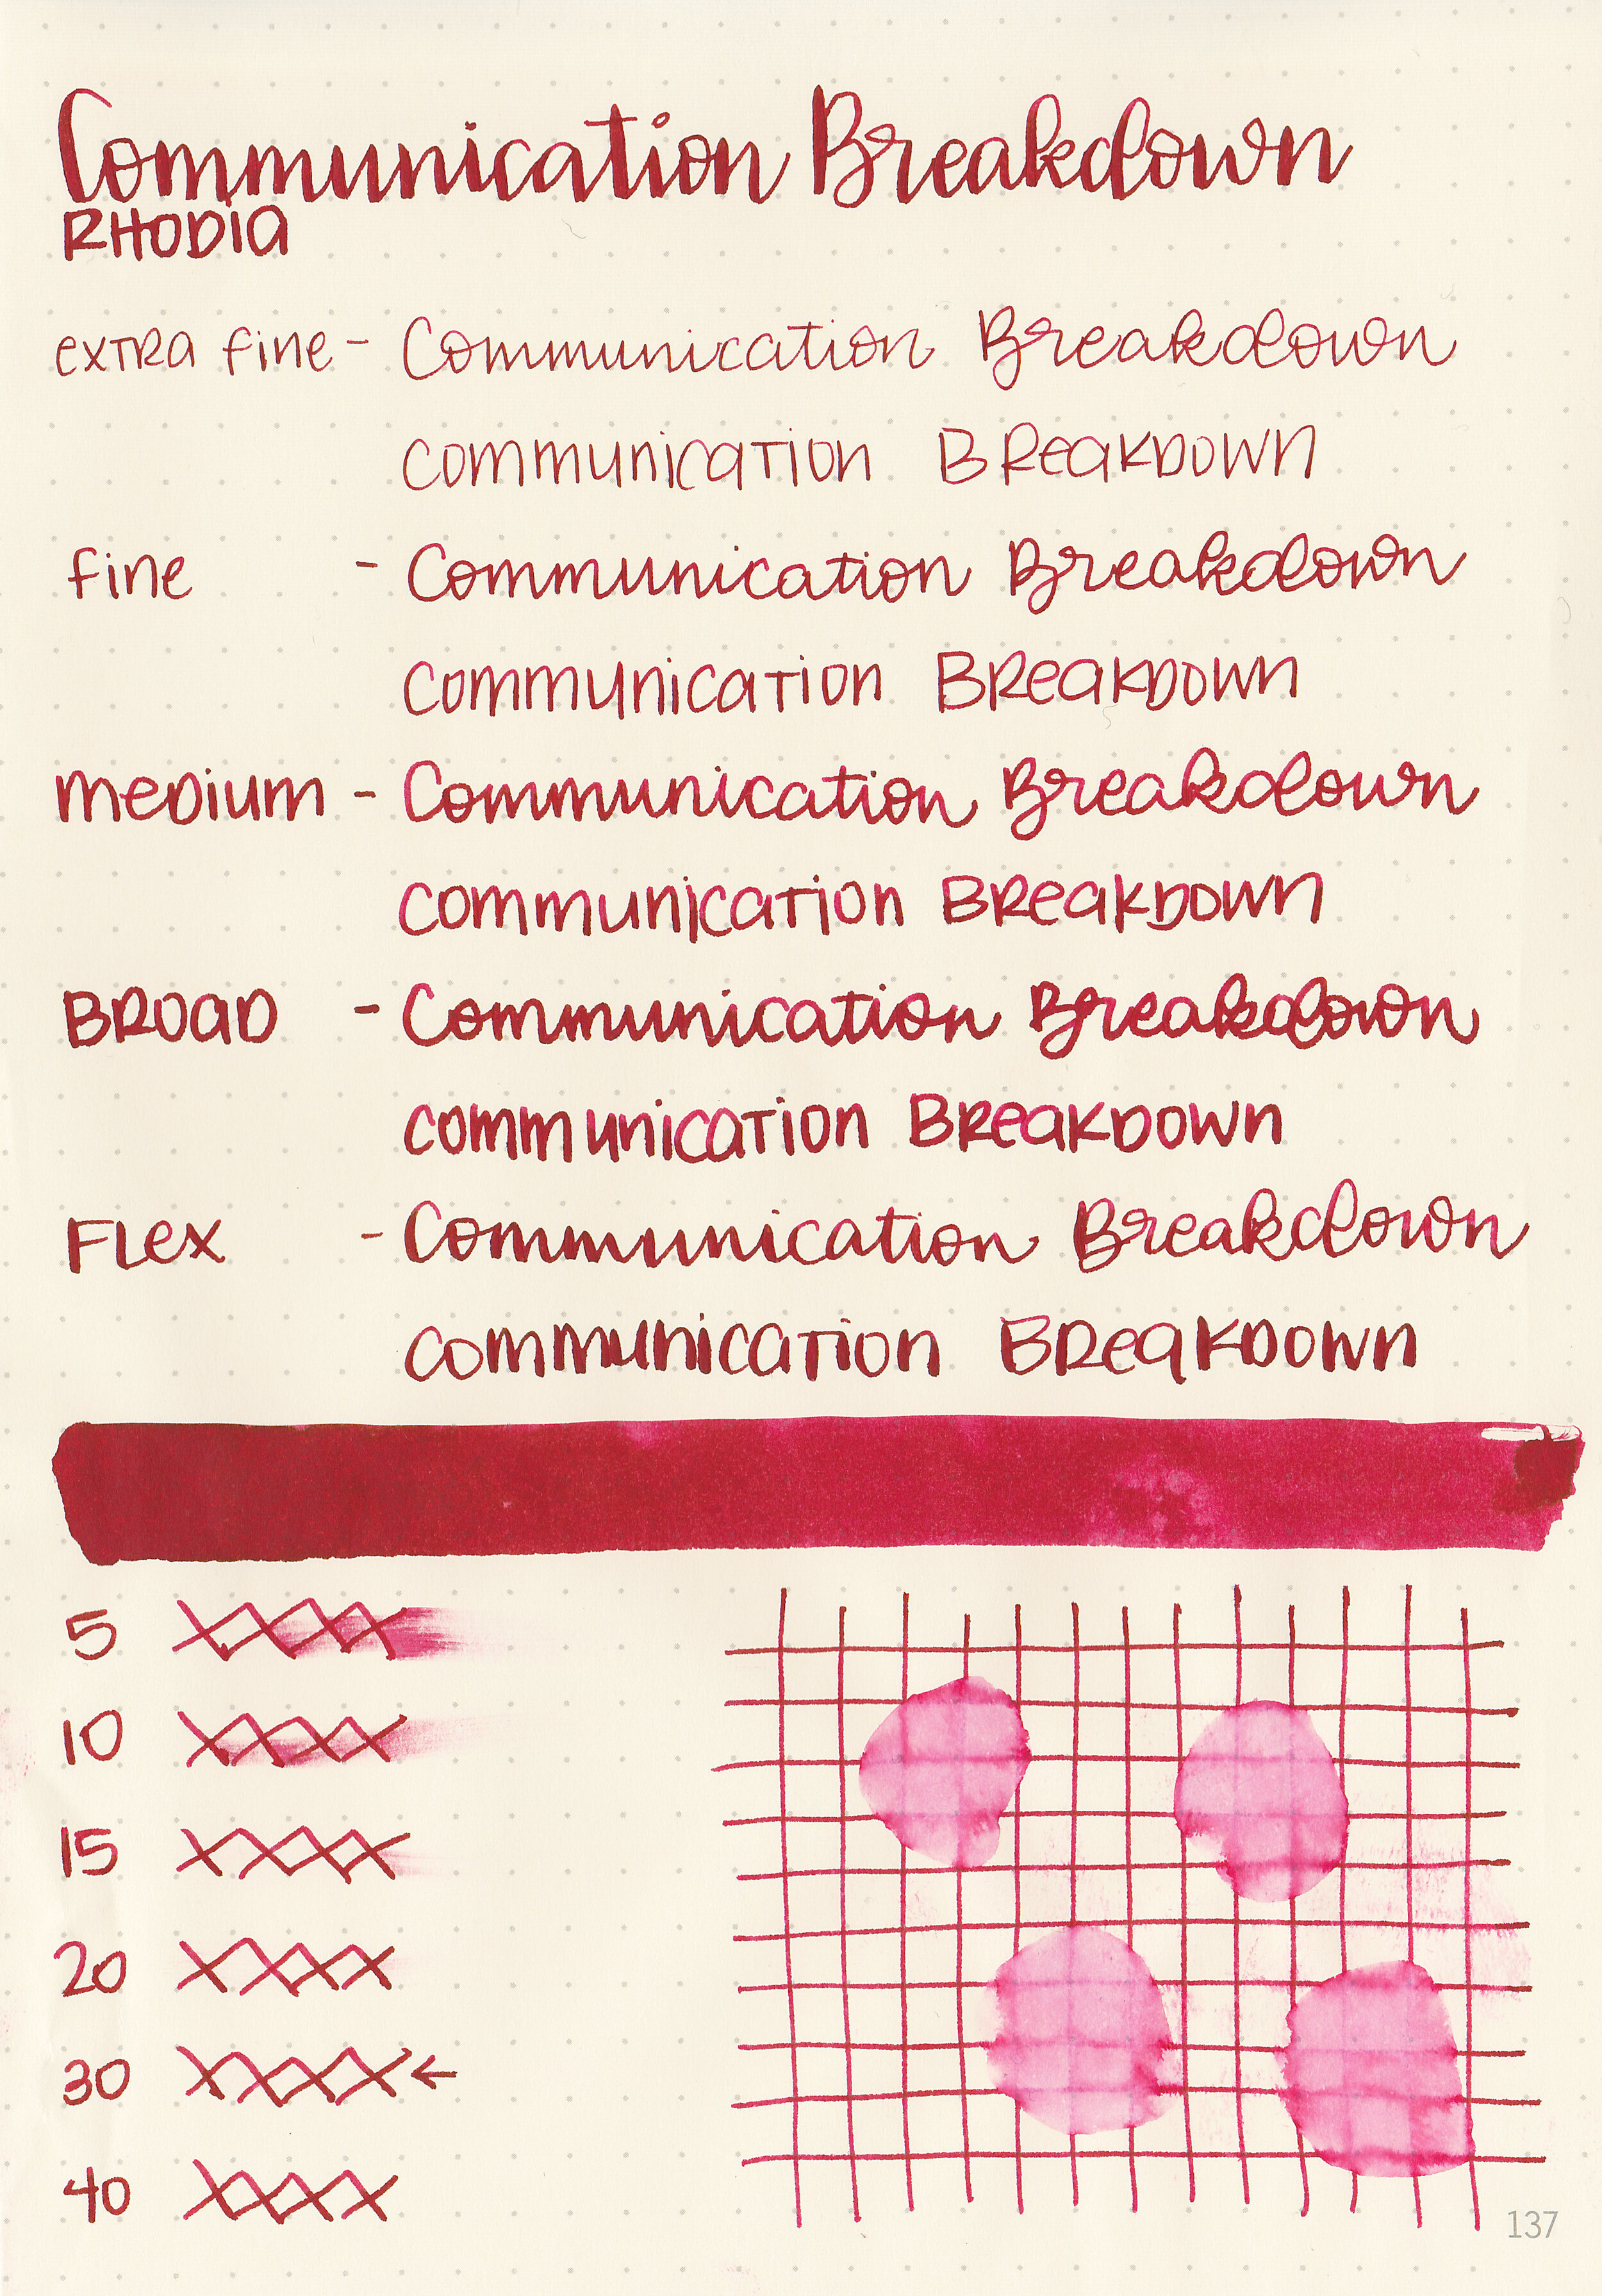 d-communication-breakdown-3.jpg